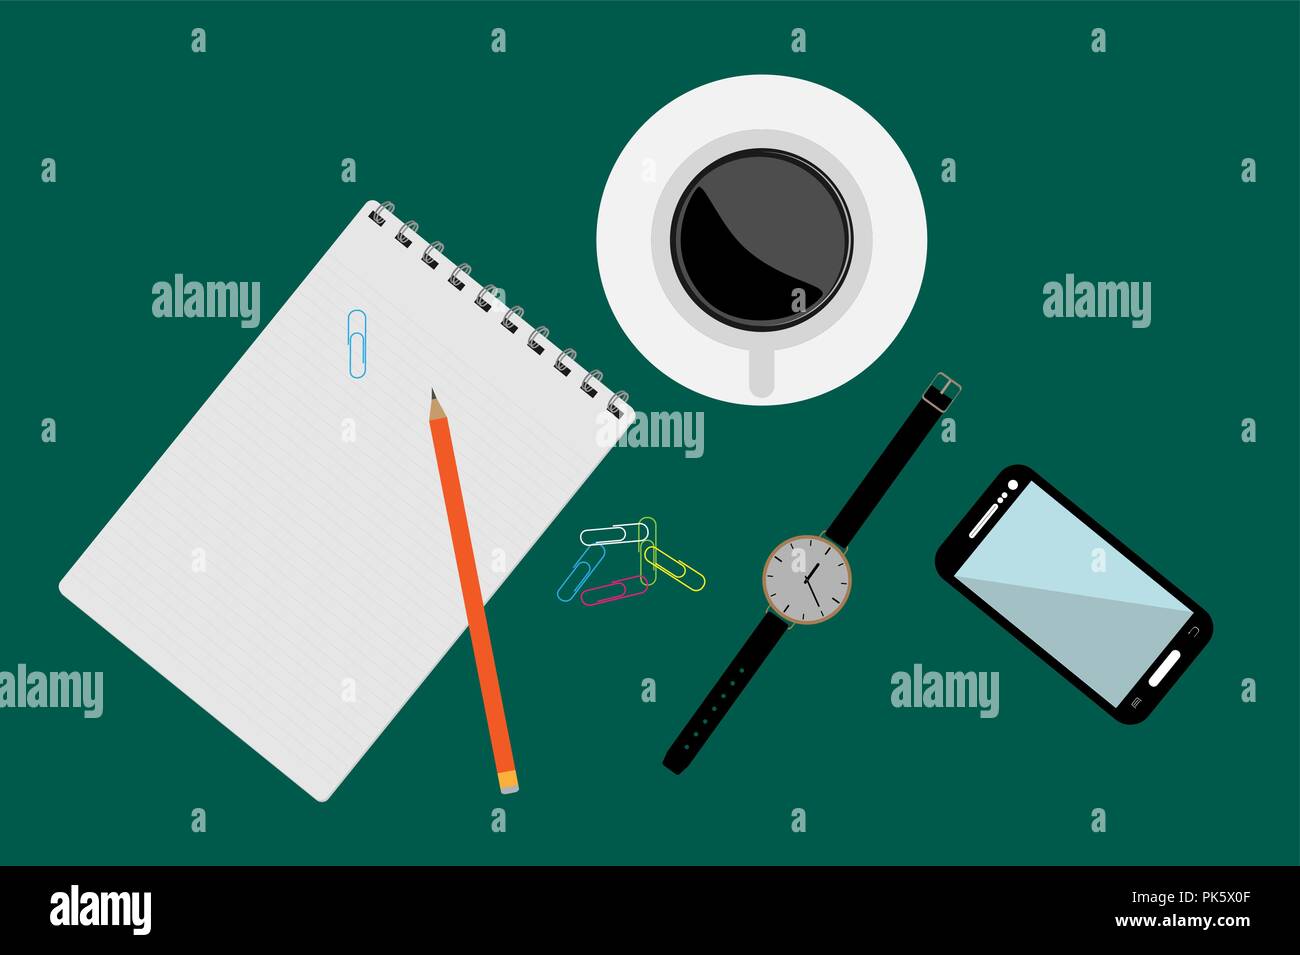 Eine Tasse Kaffee, eine Uhr, ein Smartphone und Schreibwaren auf einem einfarbigen farbige Oberfläche, eine Sicht von oben Stock Vektor